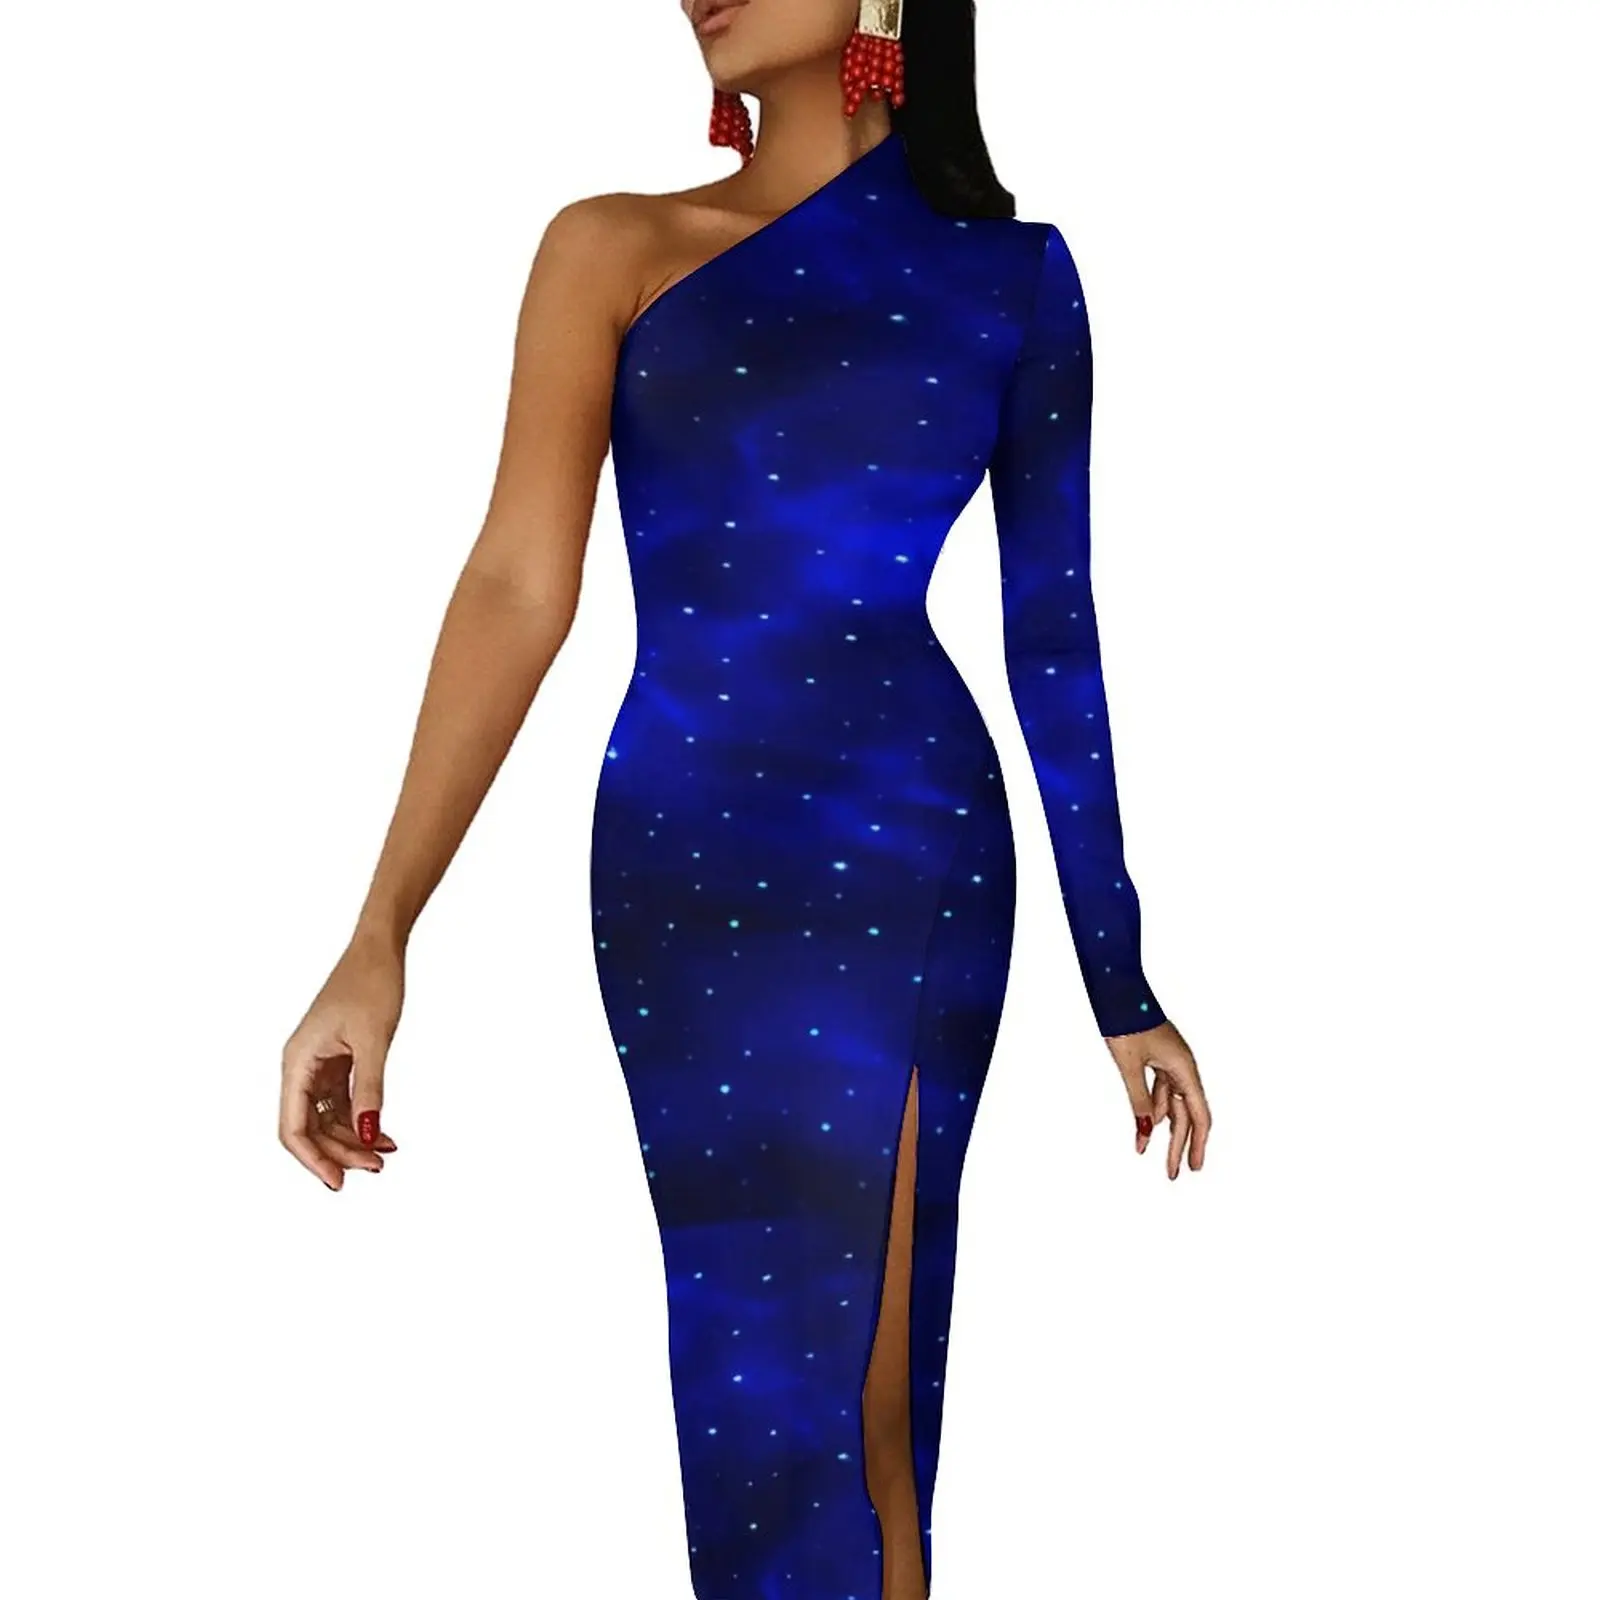 

Синее облегающее платье Galaxy, весеннее винтажное длинное платье с принтом звезд и высоким разрезом, праздничное платье с открытым плечом и узором